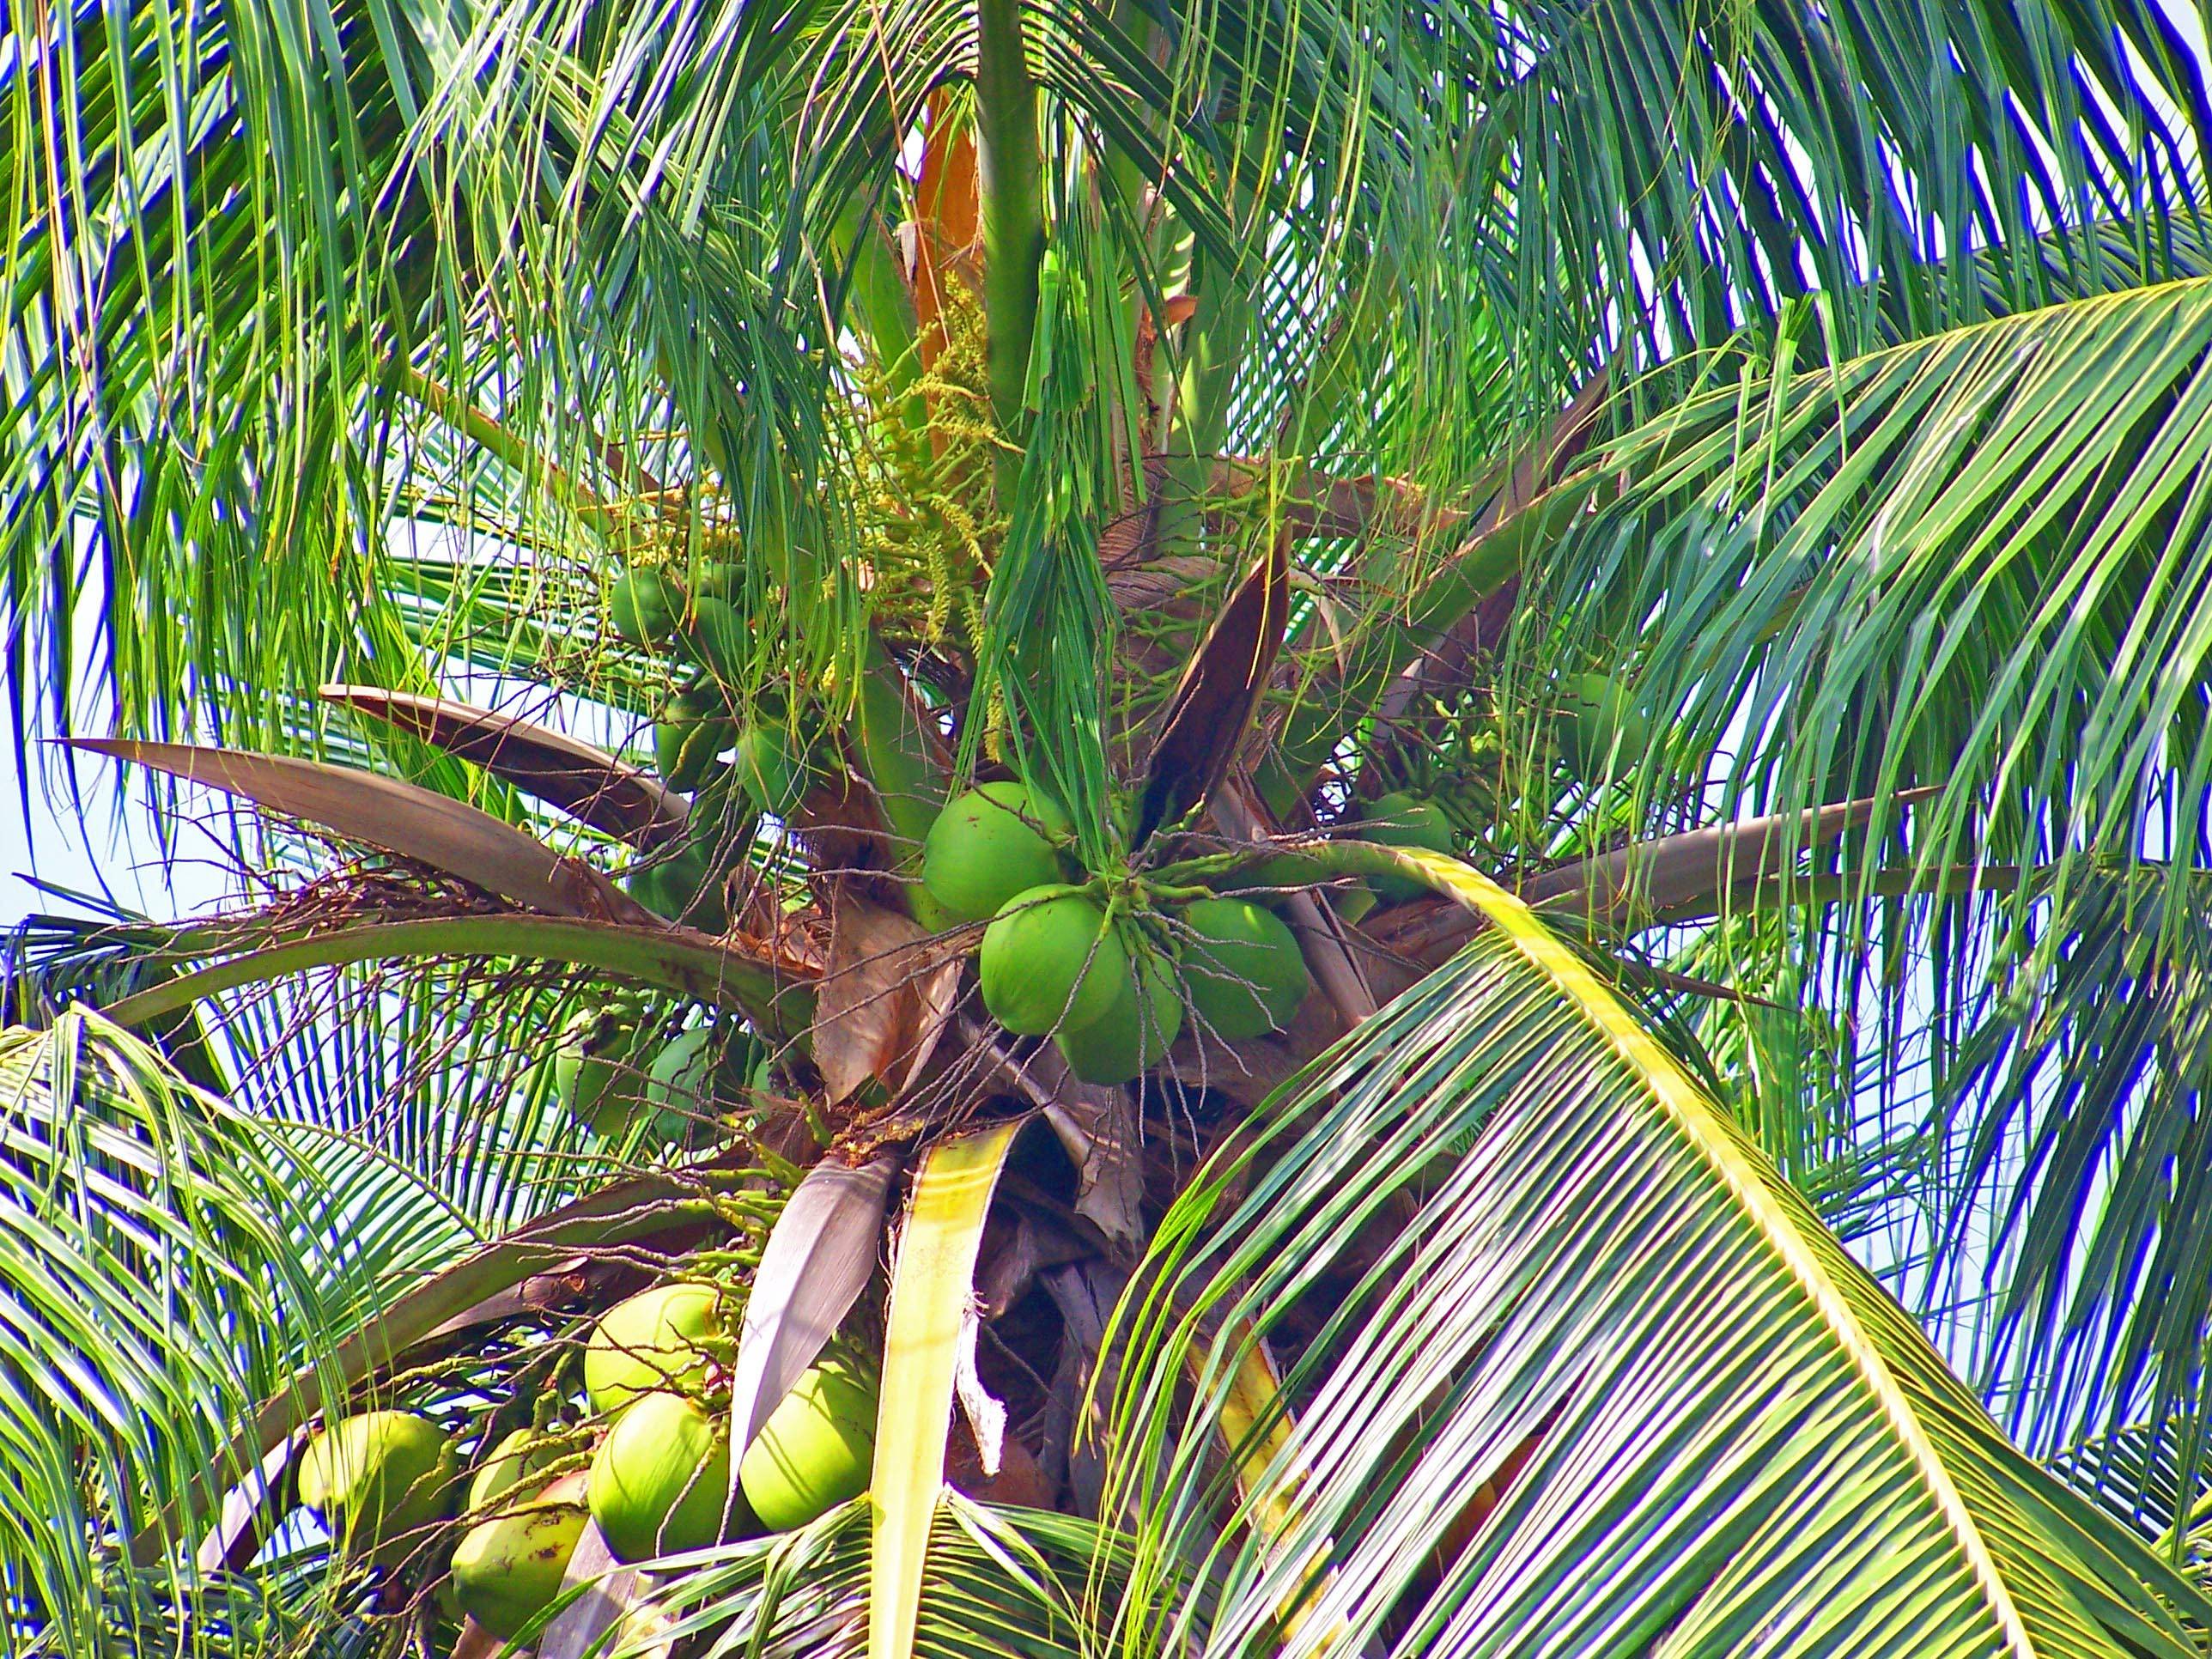 Как вырастить кокосовую пальму дома, особенности ухода за ней